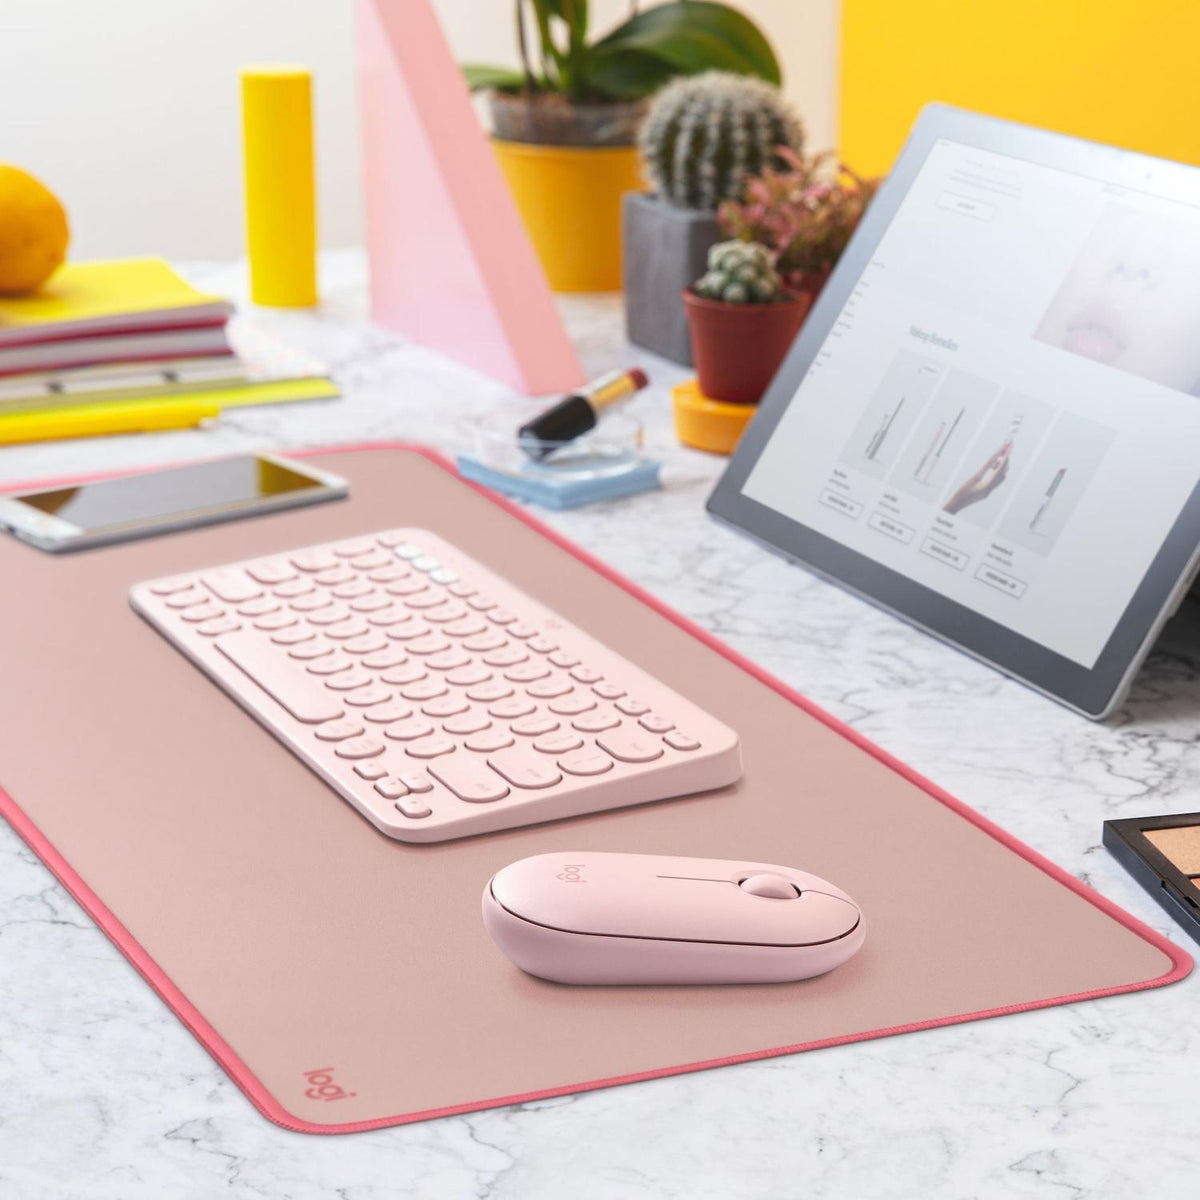 Logitech Mouse Pad Mouse Pad Desk Mat Studio - vertikal